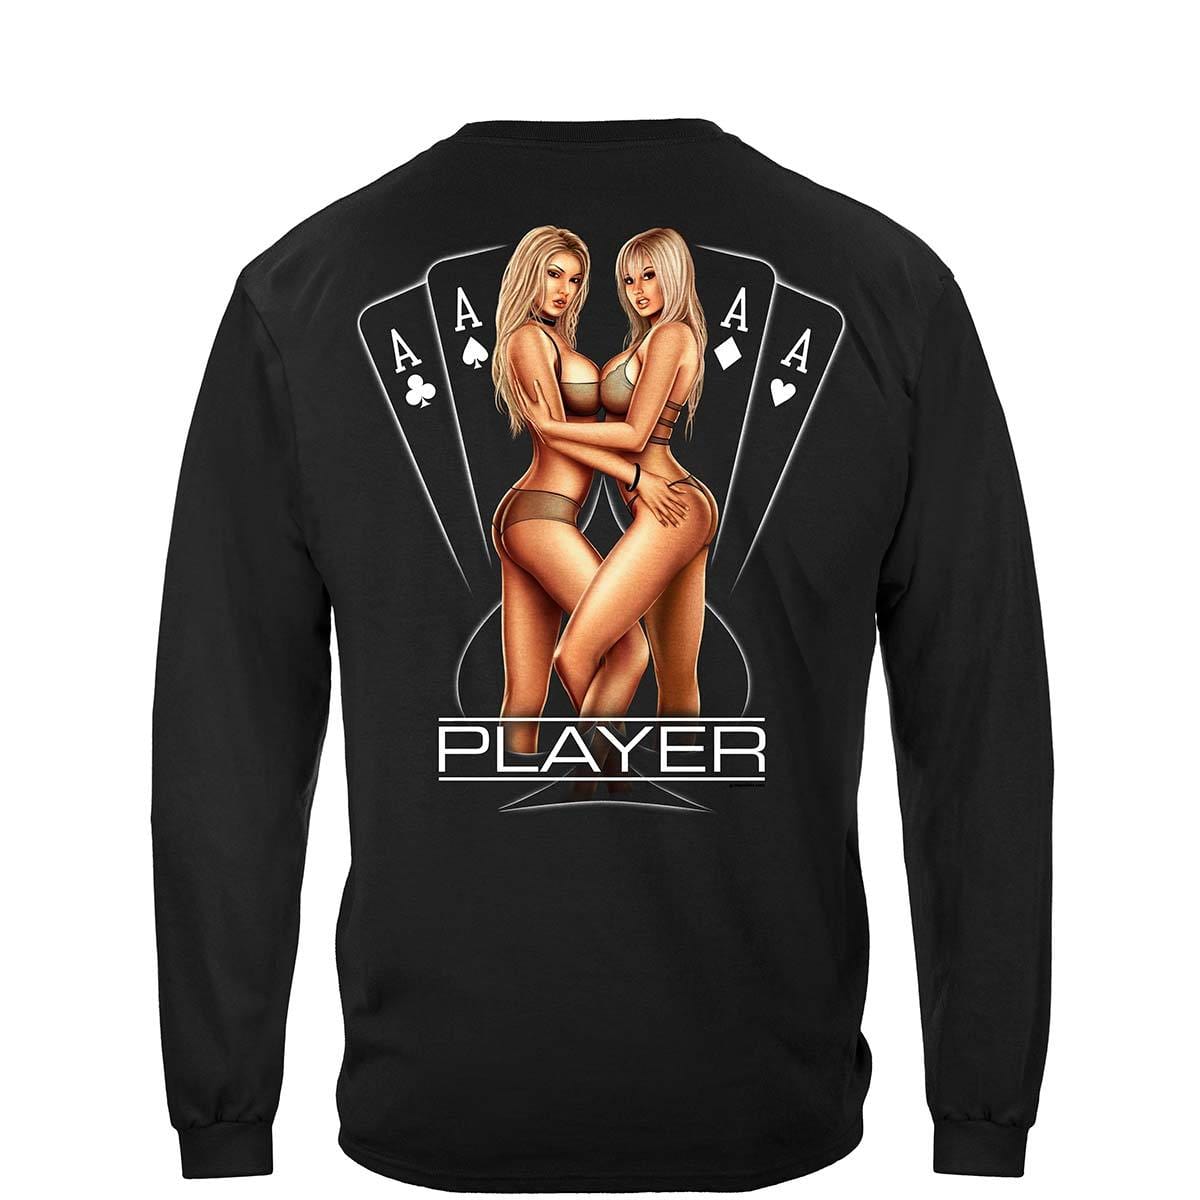 Player Premium T-Shirt